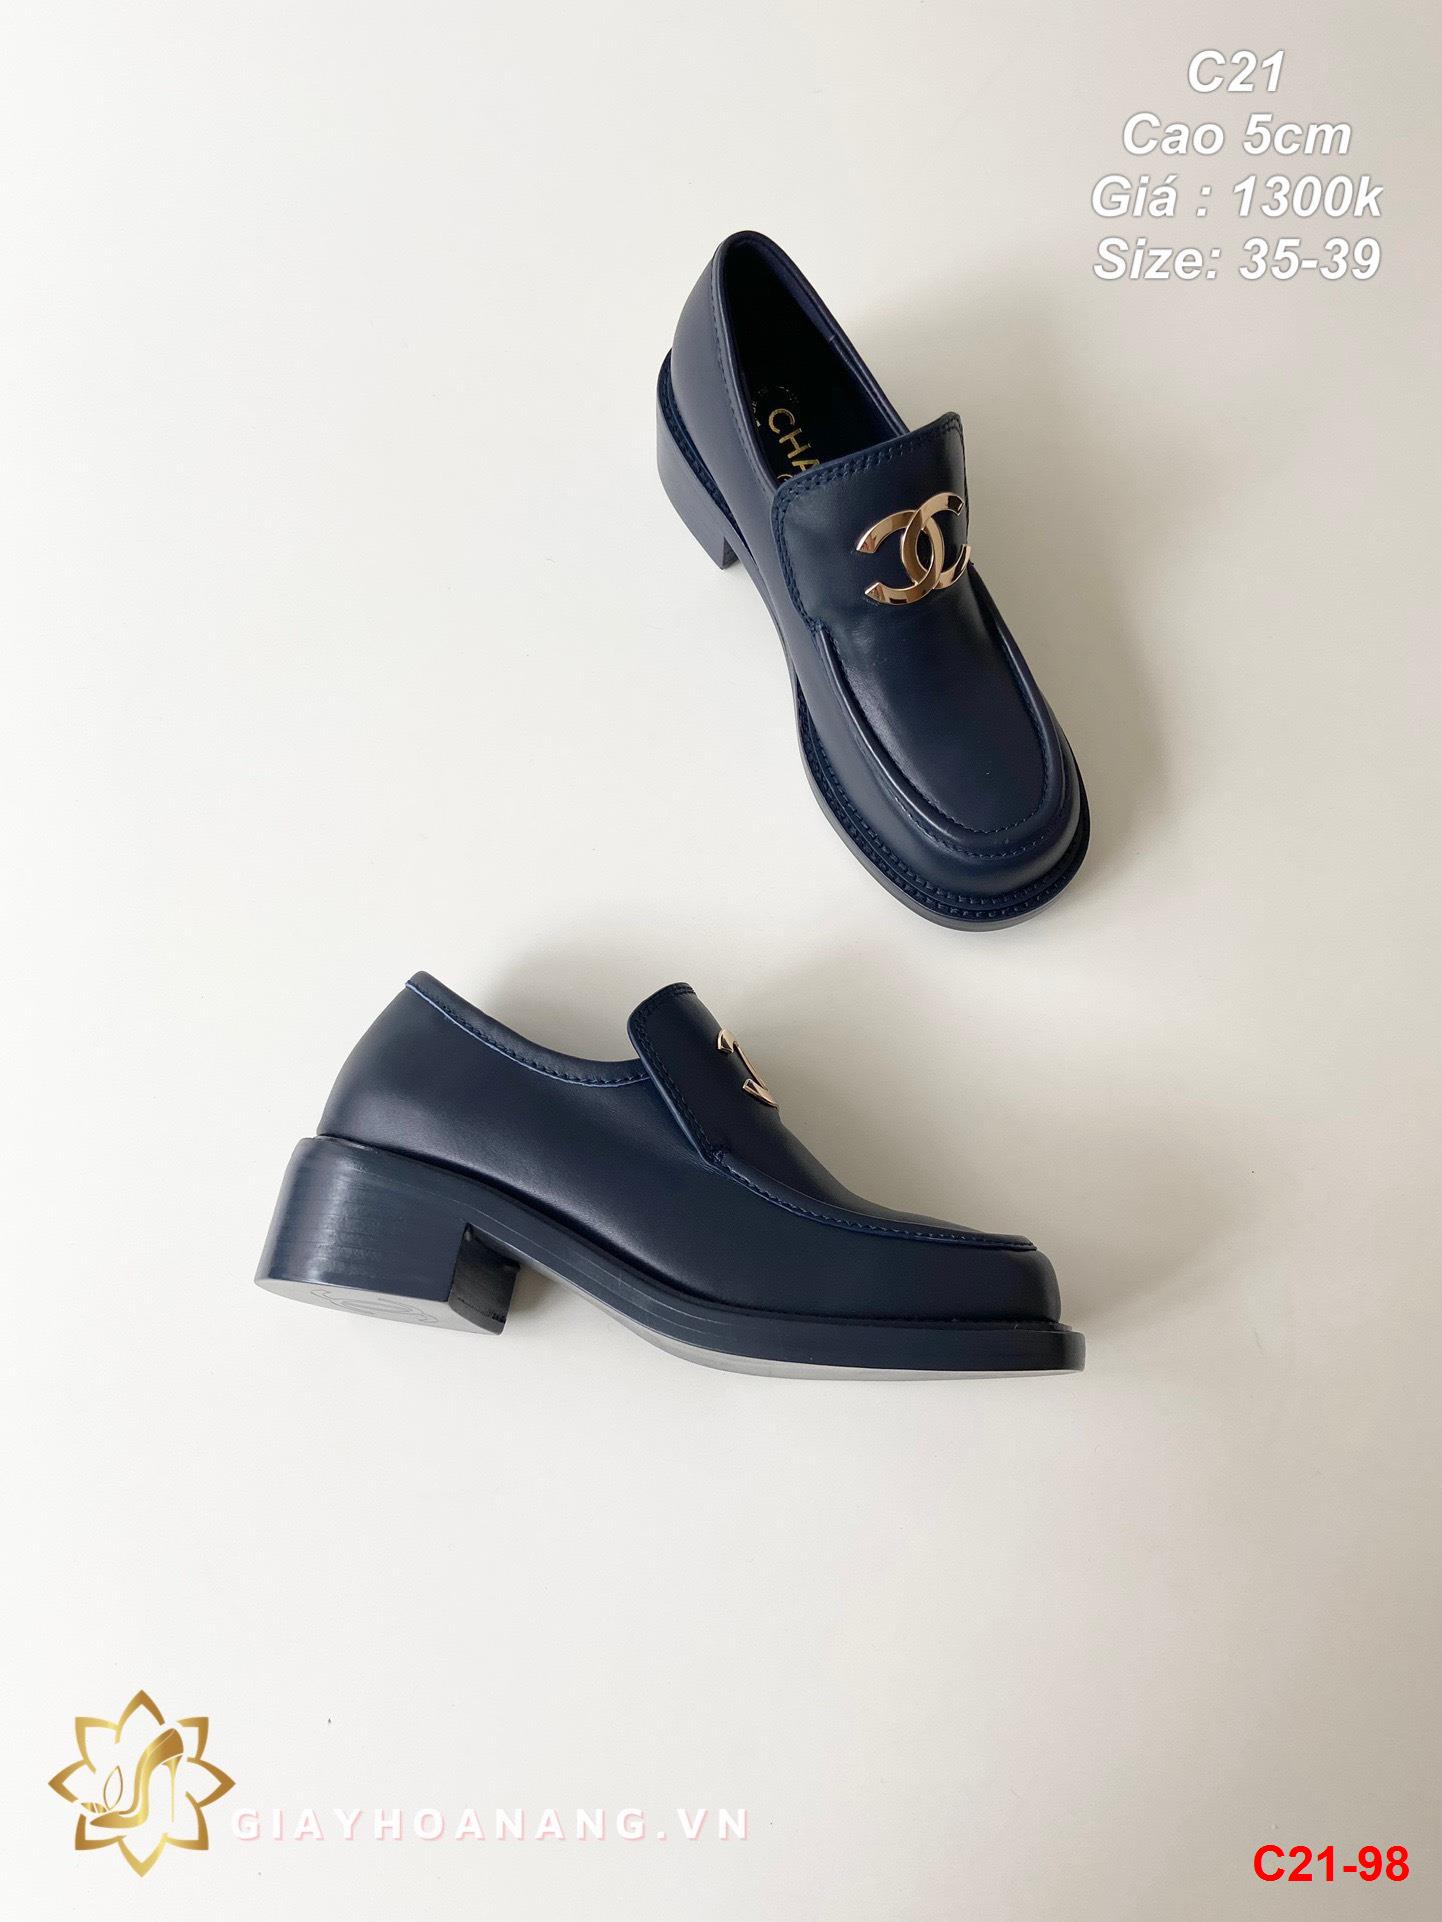 C21-98 Chanel giày cao 5cm siêu cấp